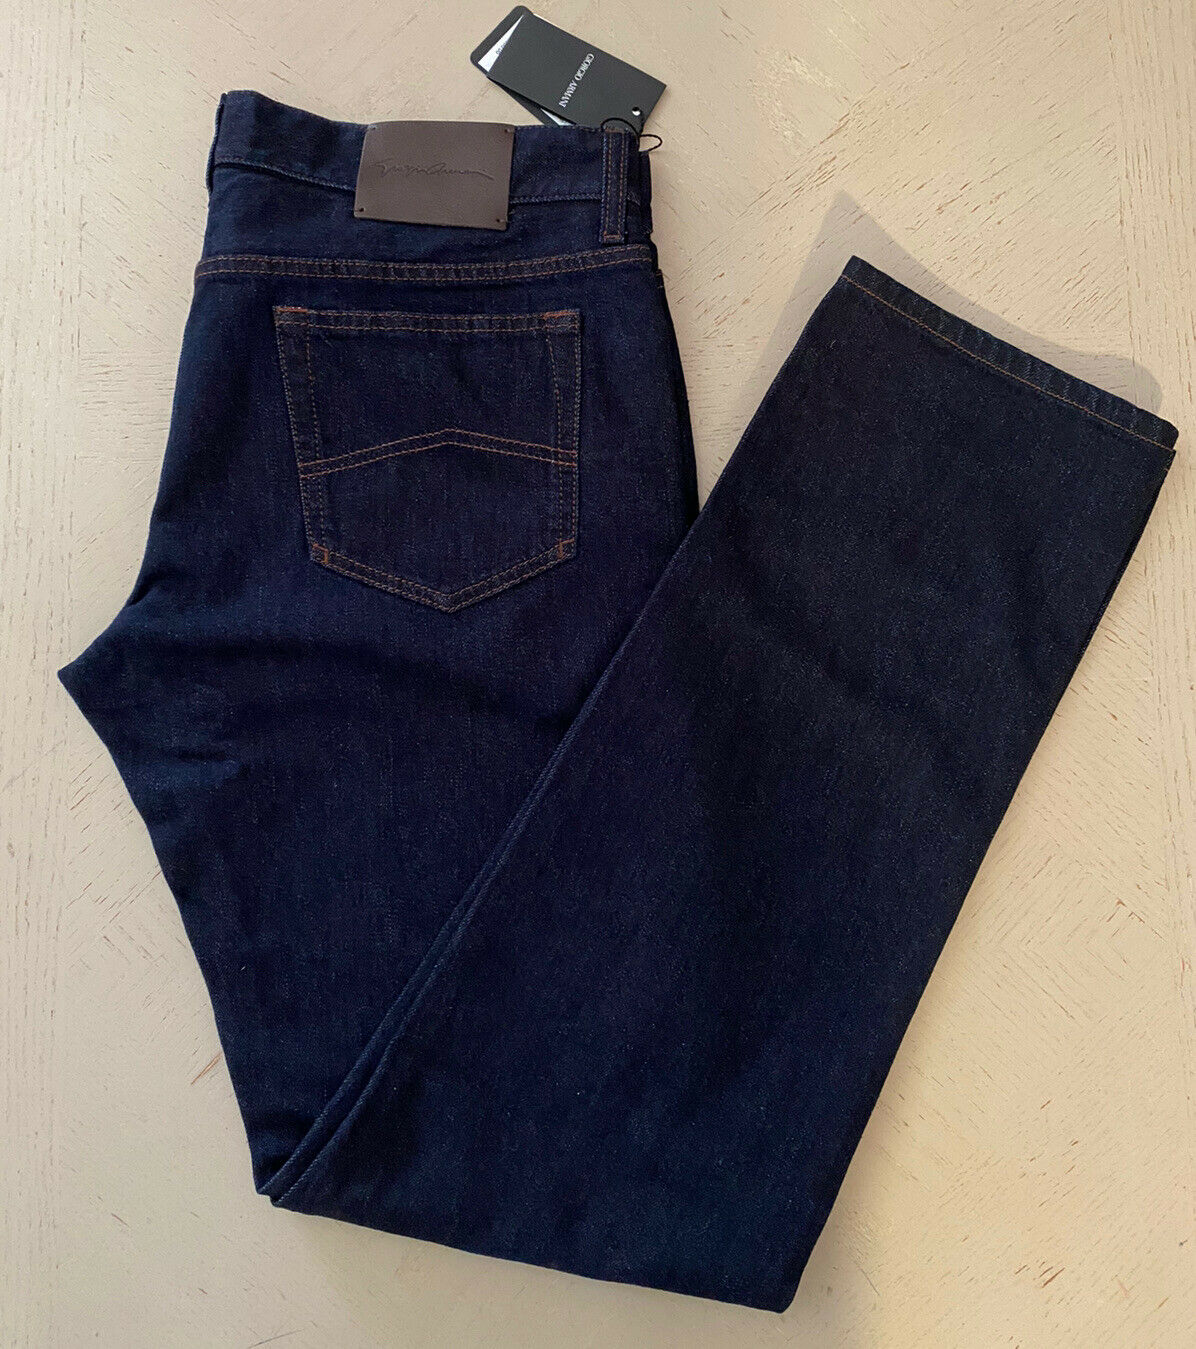 СЗТ 1075 долларов США Giorgio Armani Мужские джинсовые брюки синие джинсовые 36 США (52 ЕС) Италия